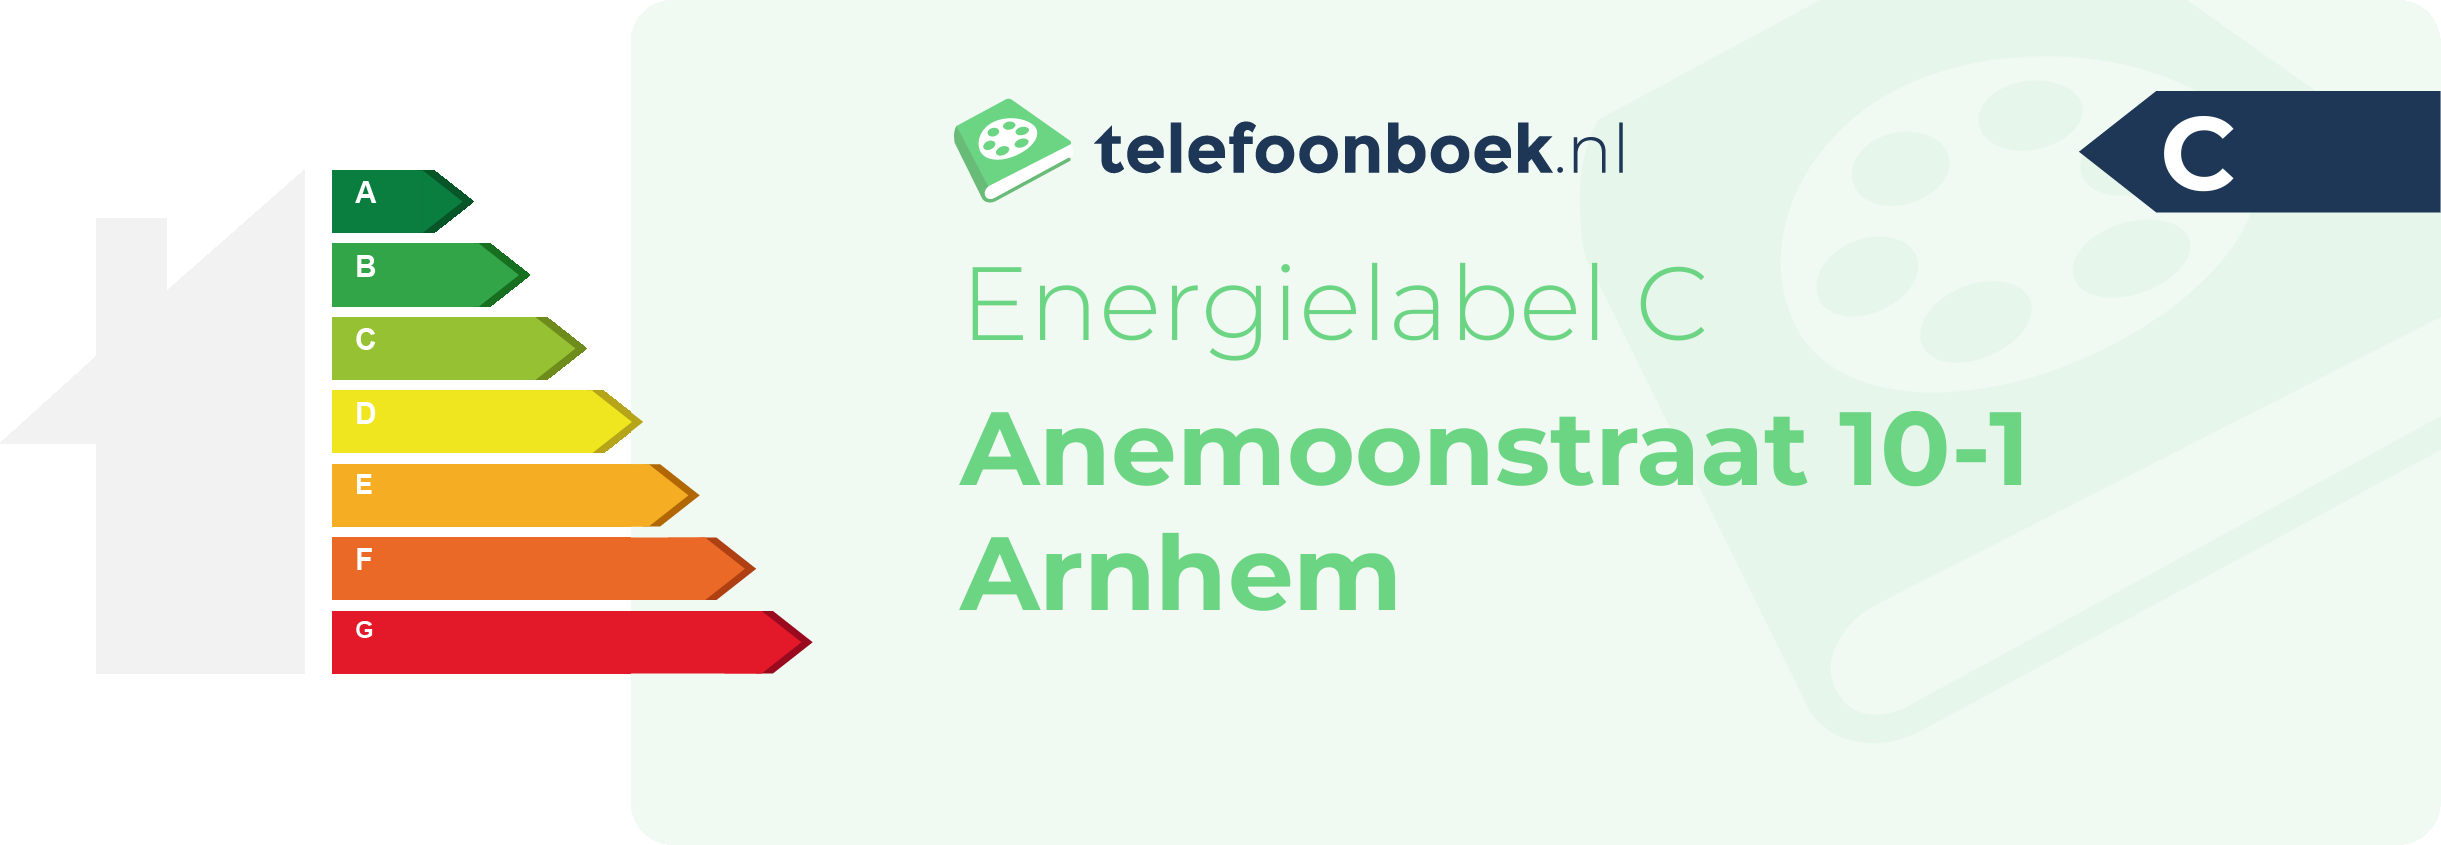 Energielabel Anemoonstraat 10-1 Arnhem